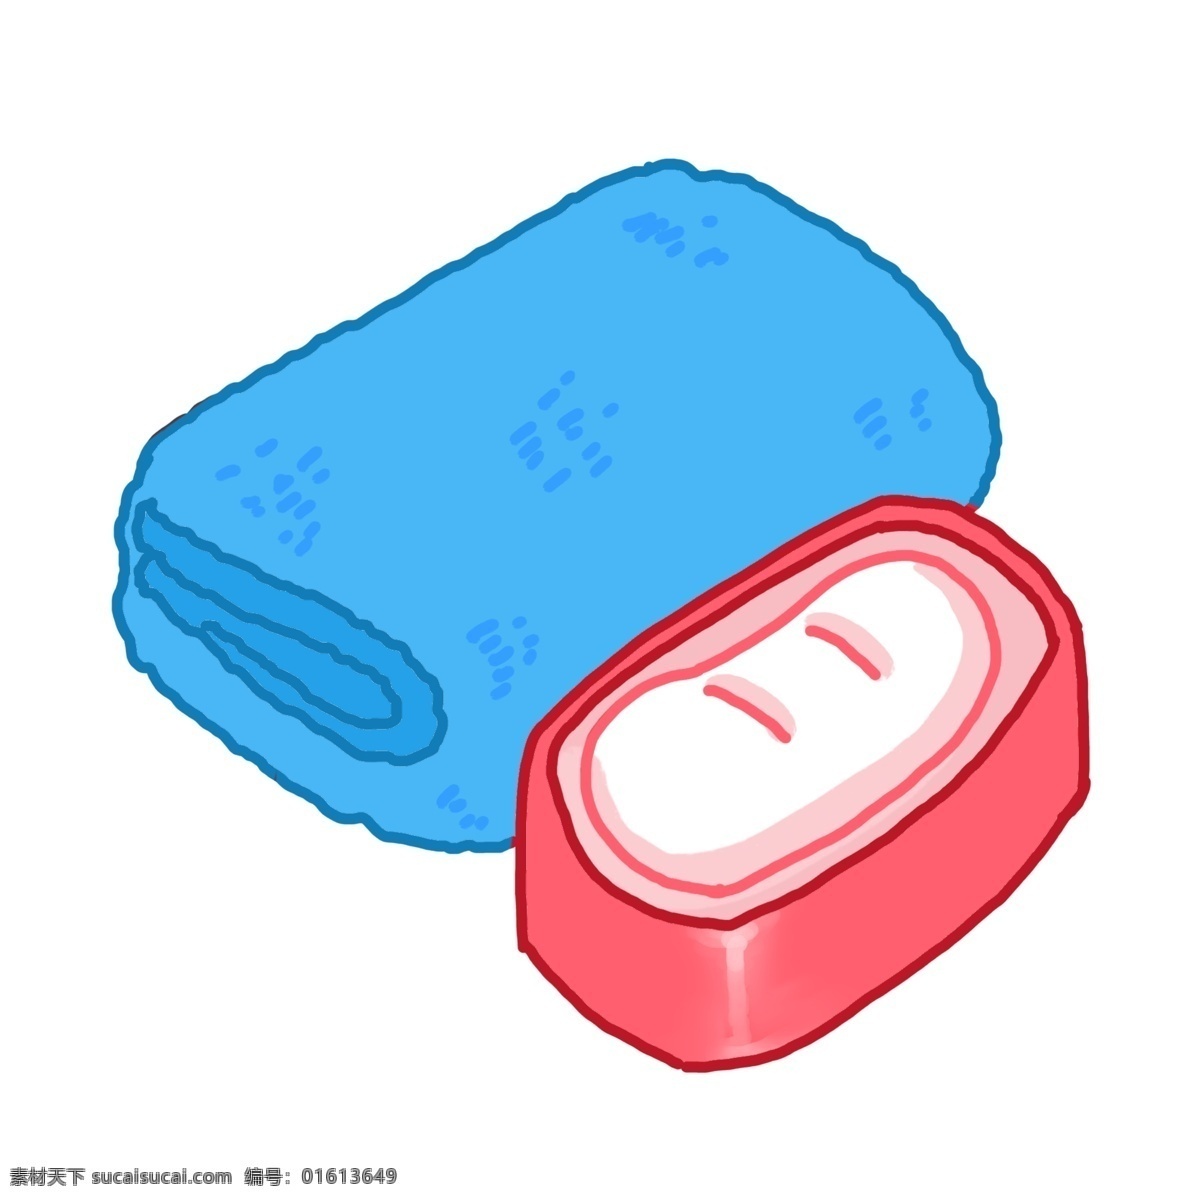 蓝色毛巾香皂 红色 香皂盒 生活用品